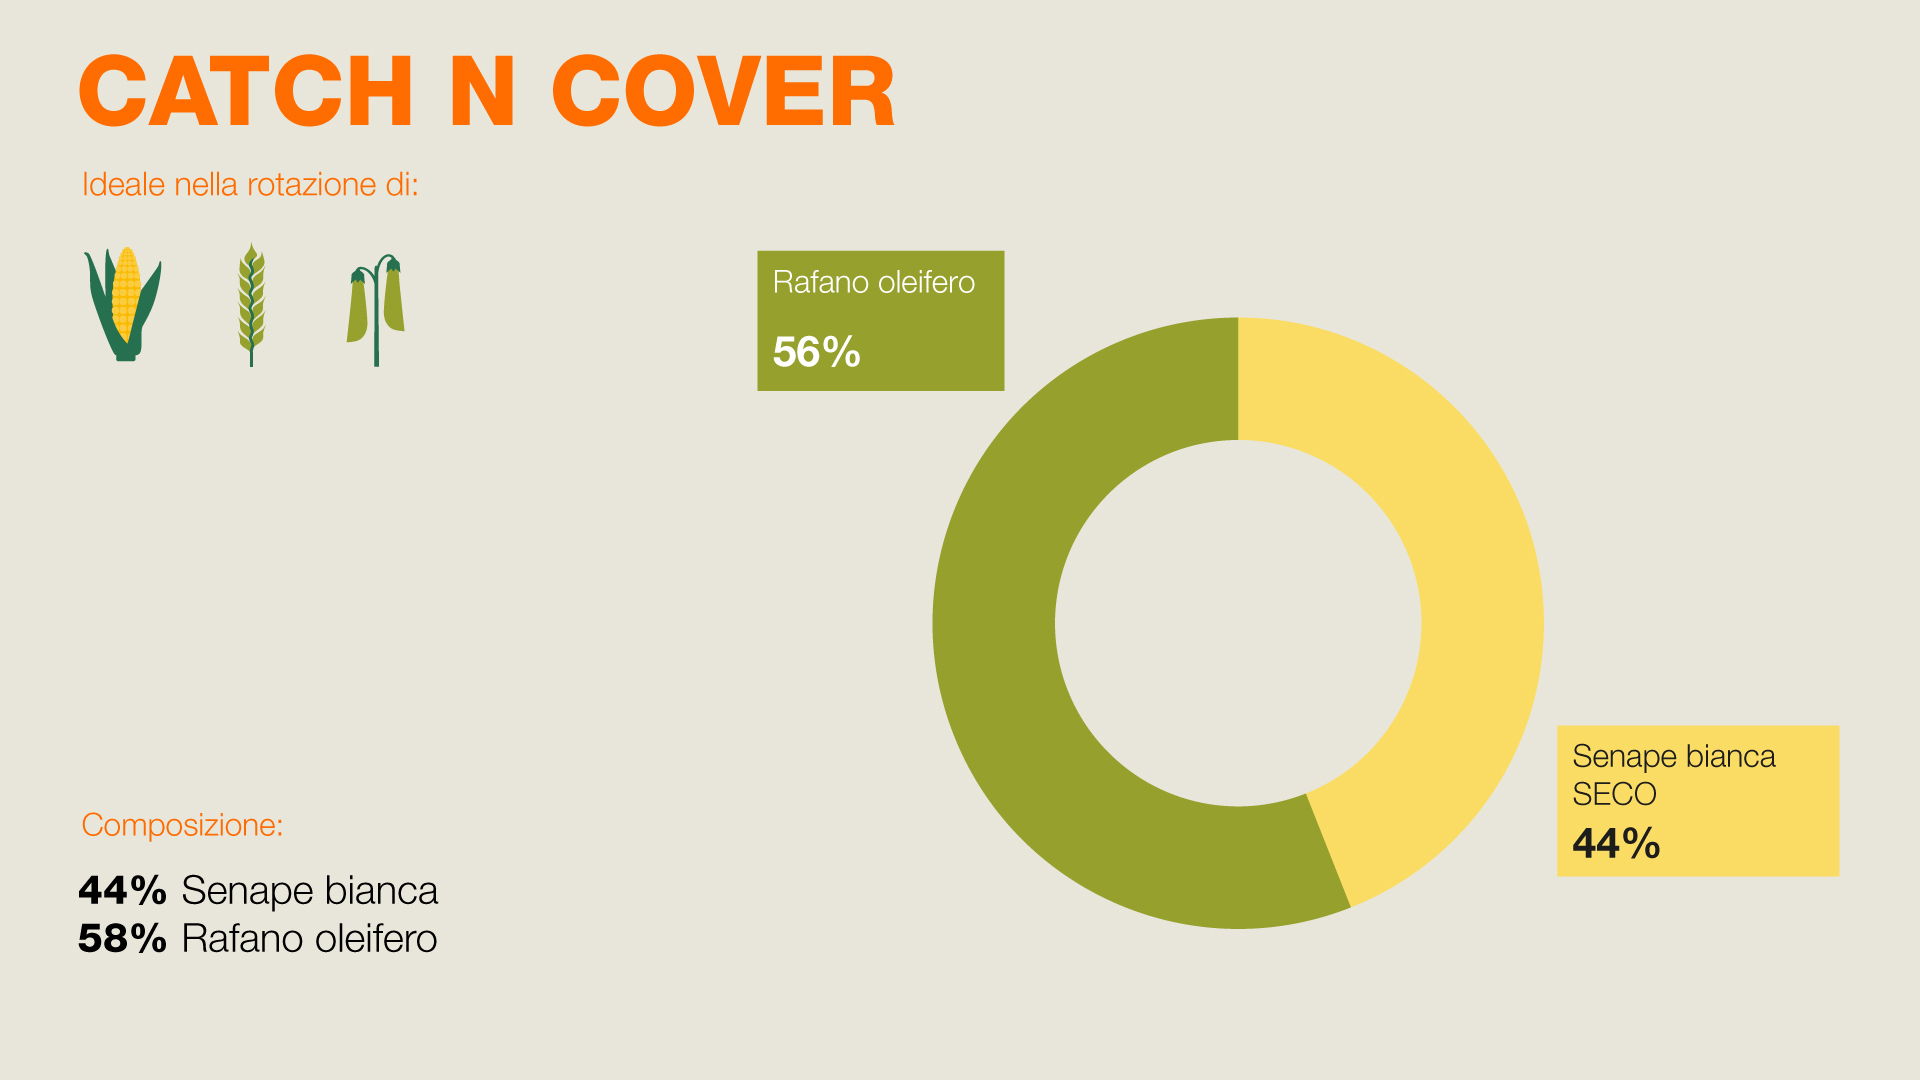 Composizione di CATHC N COVER - 44% senape bianca SECO, 56% Rafano Oleifero